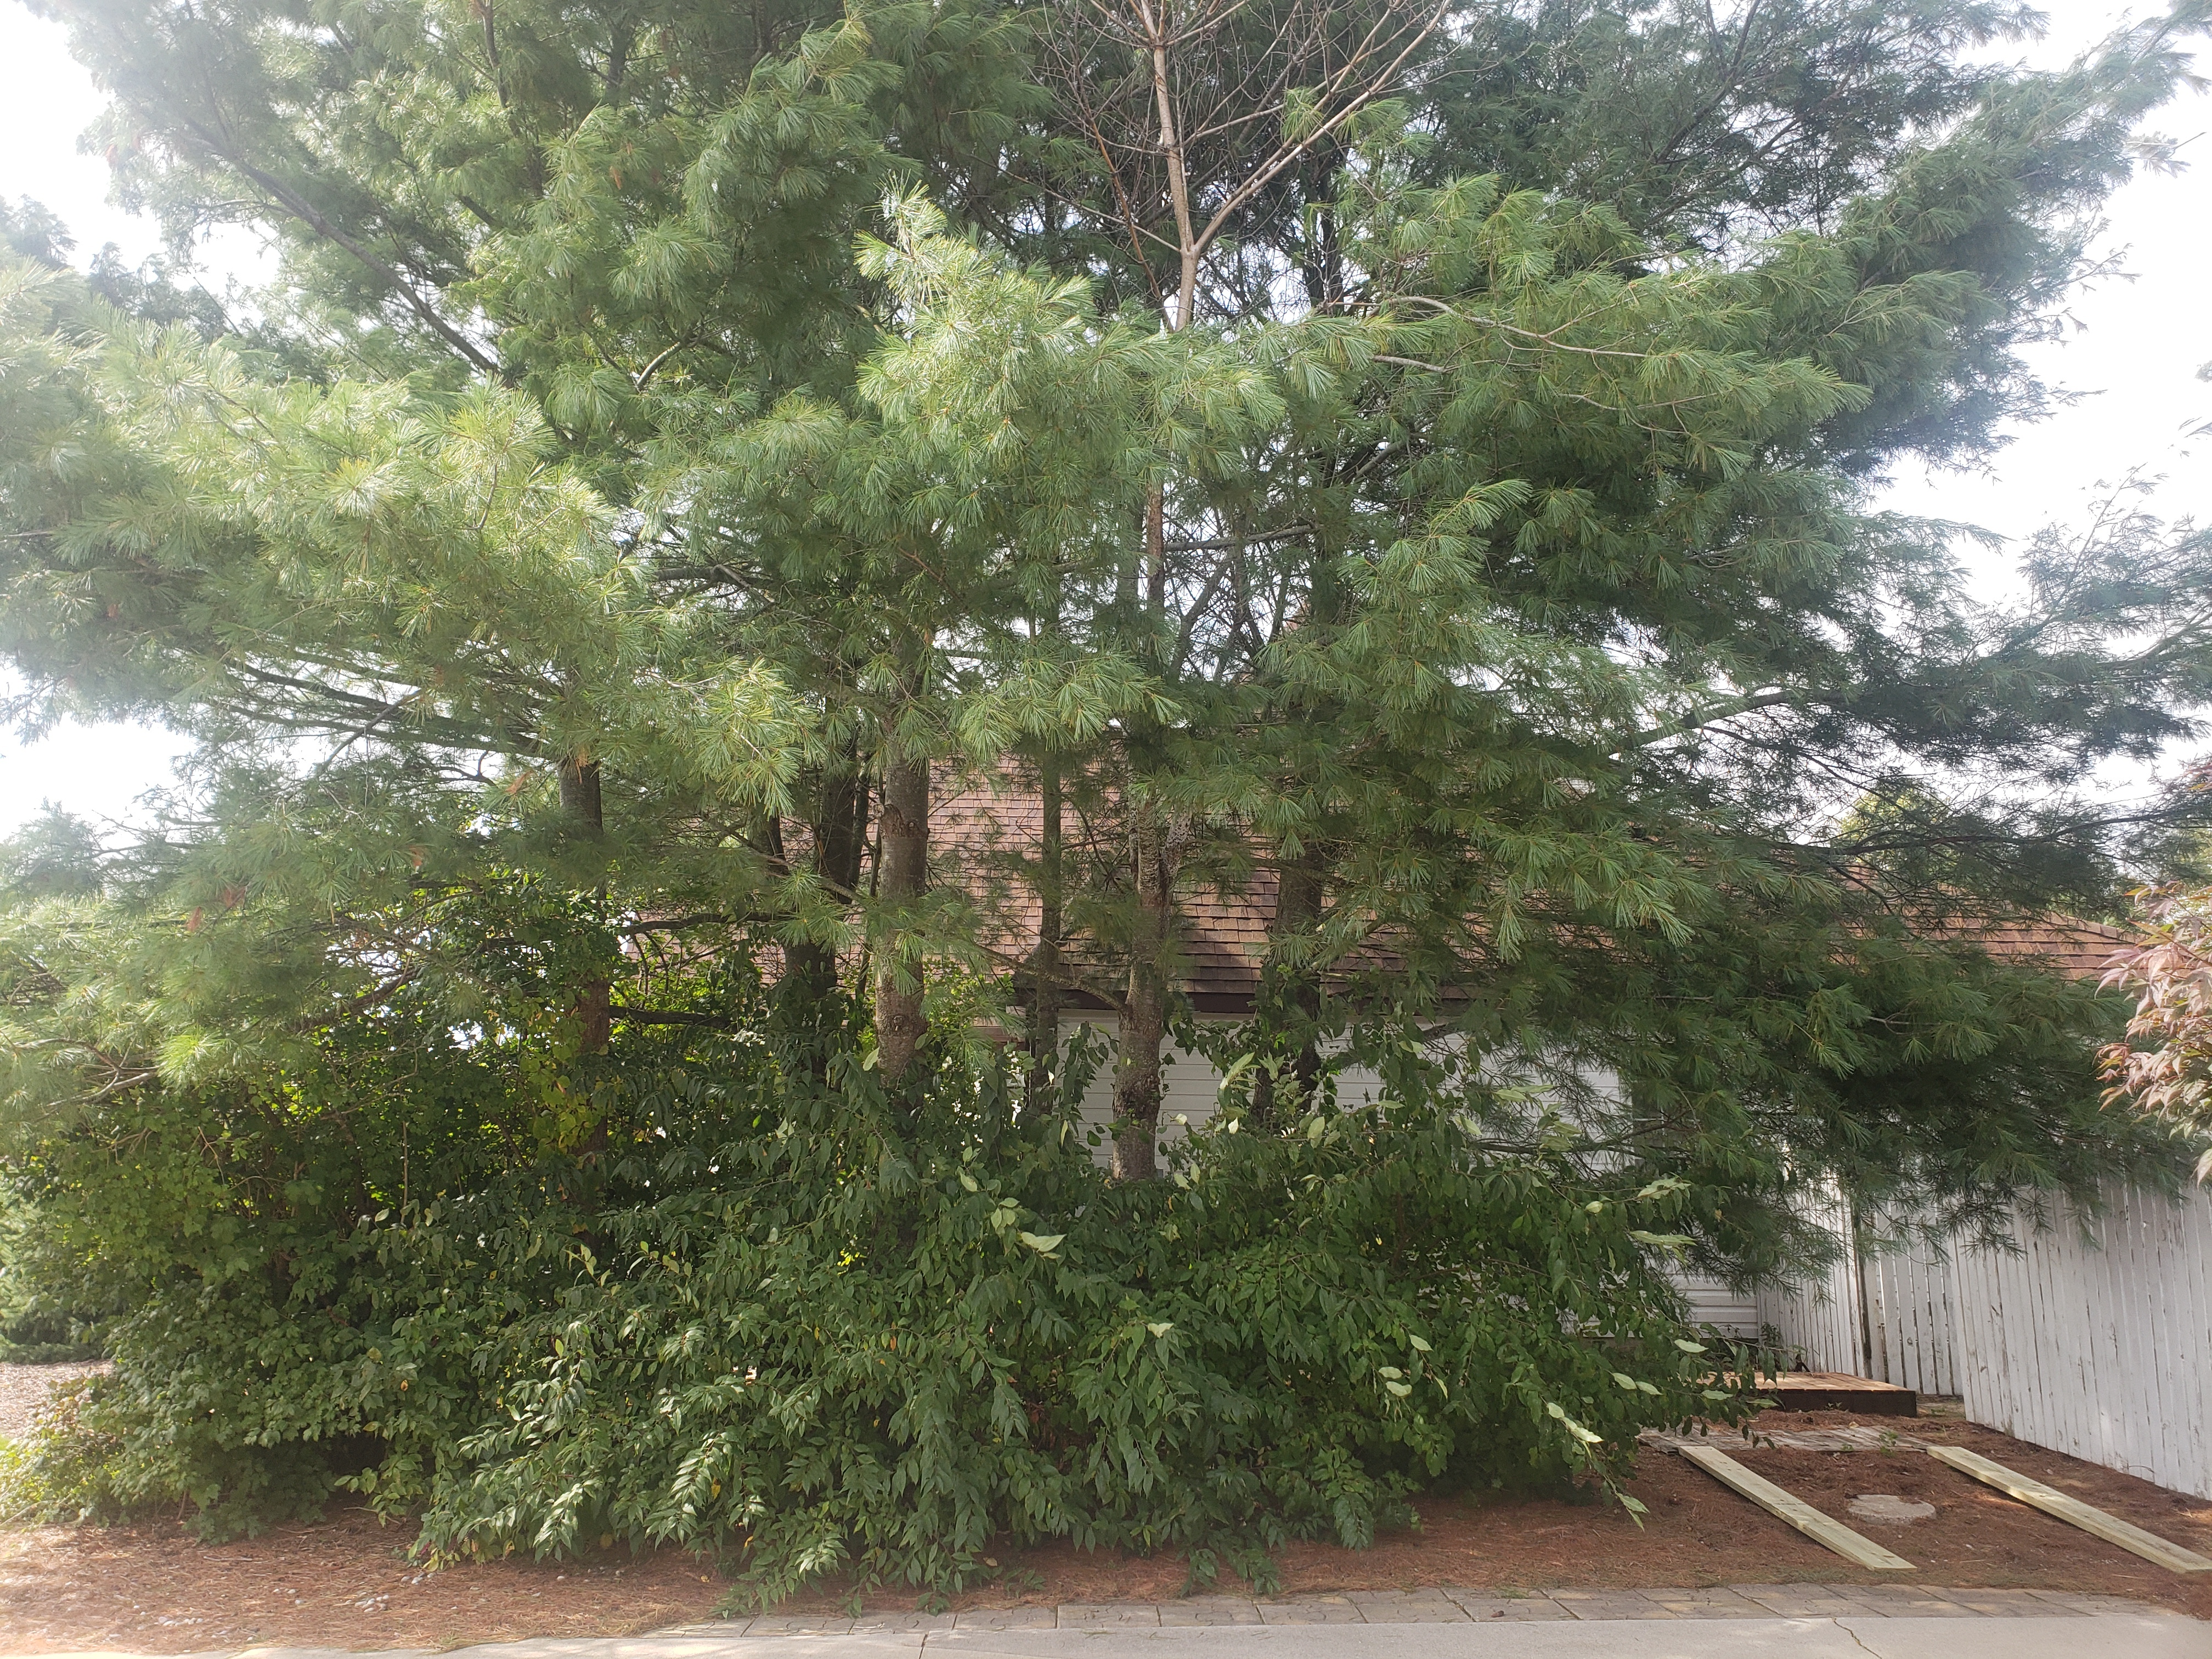 Pine Bark Adelgids Infest White Pines